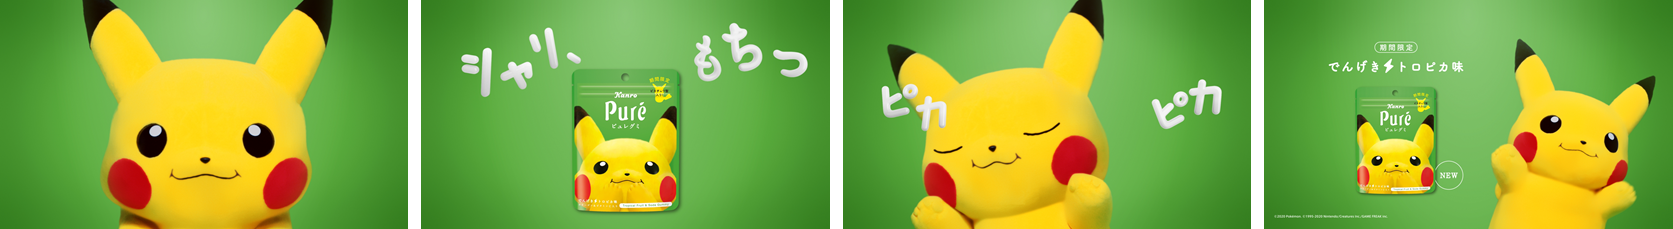 ピカチュウ-Pikachu-皮卡丘7